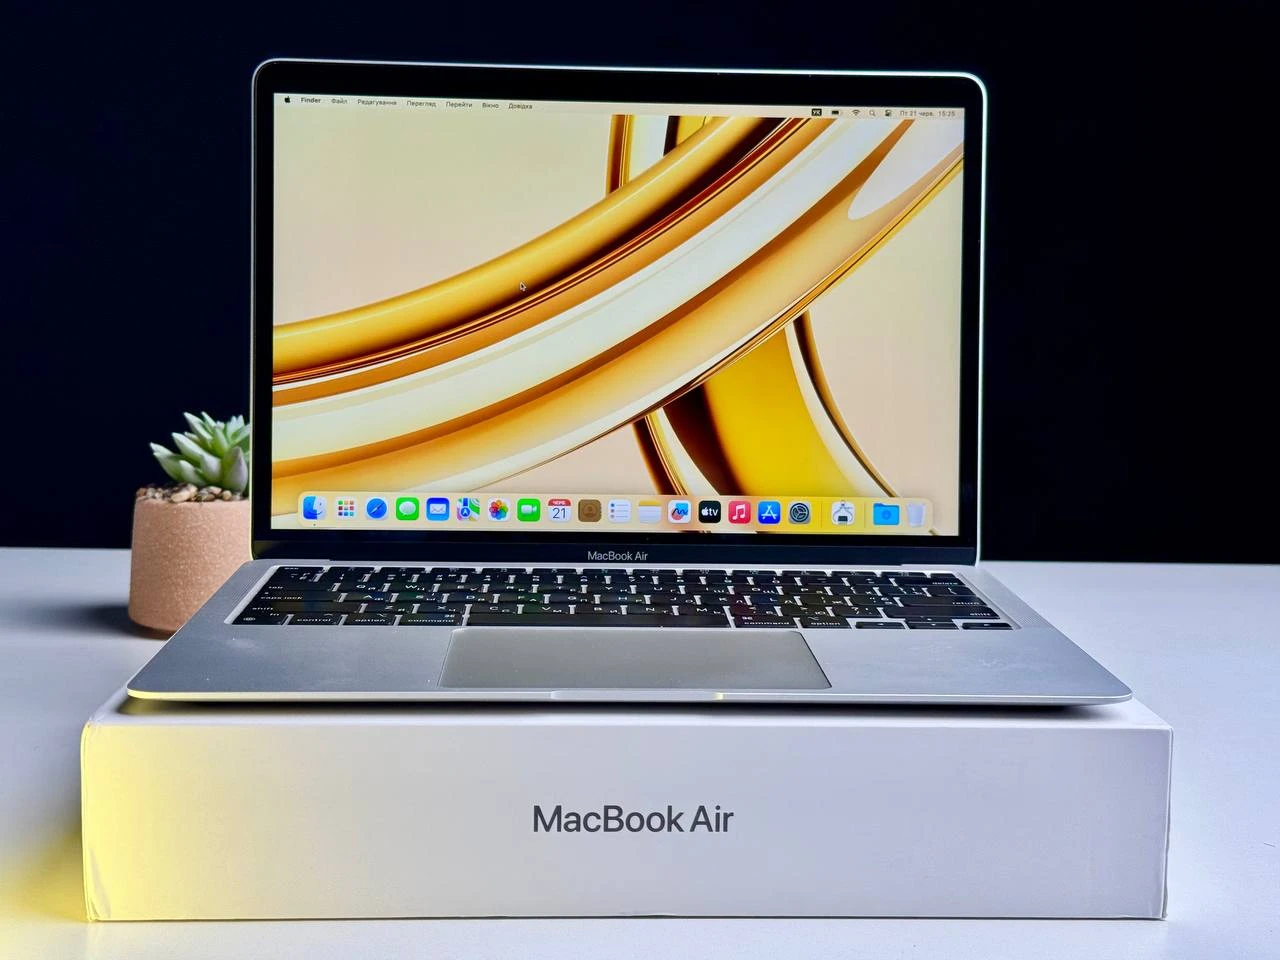 Б/У MacBook Air 13" Silver 2020 (MGN93) - Состояние: хорошее | Комплект: полный | Гарантия: 3 мес.